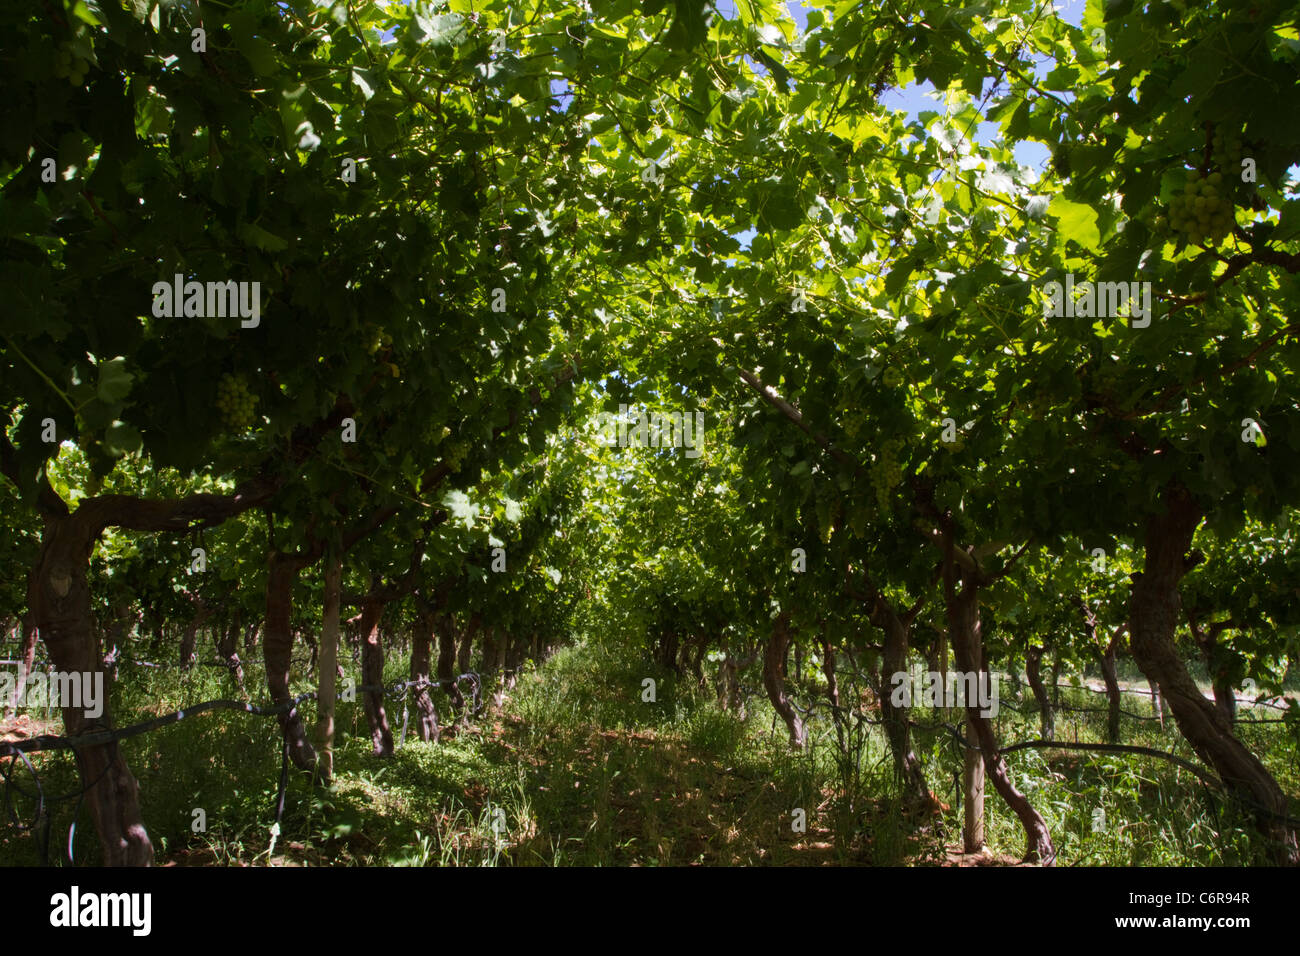 Les vignes dans un vignoble irrigué sur les rives du fleuve Orange Banque D'Images